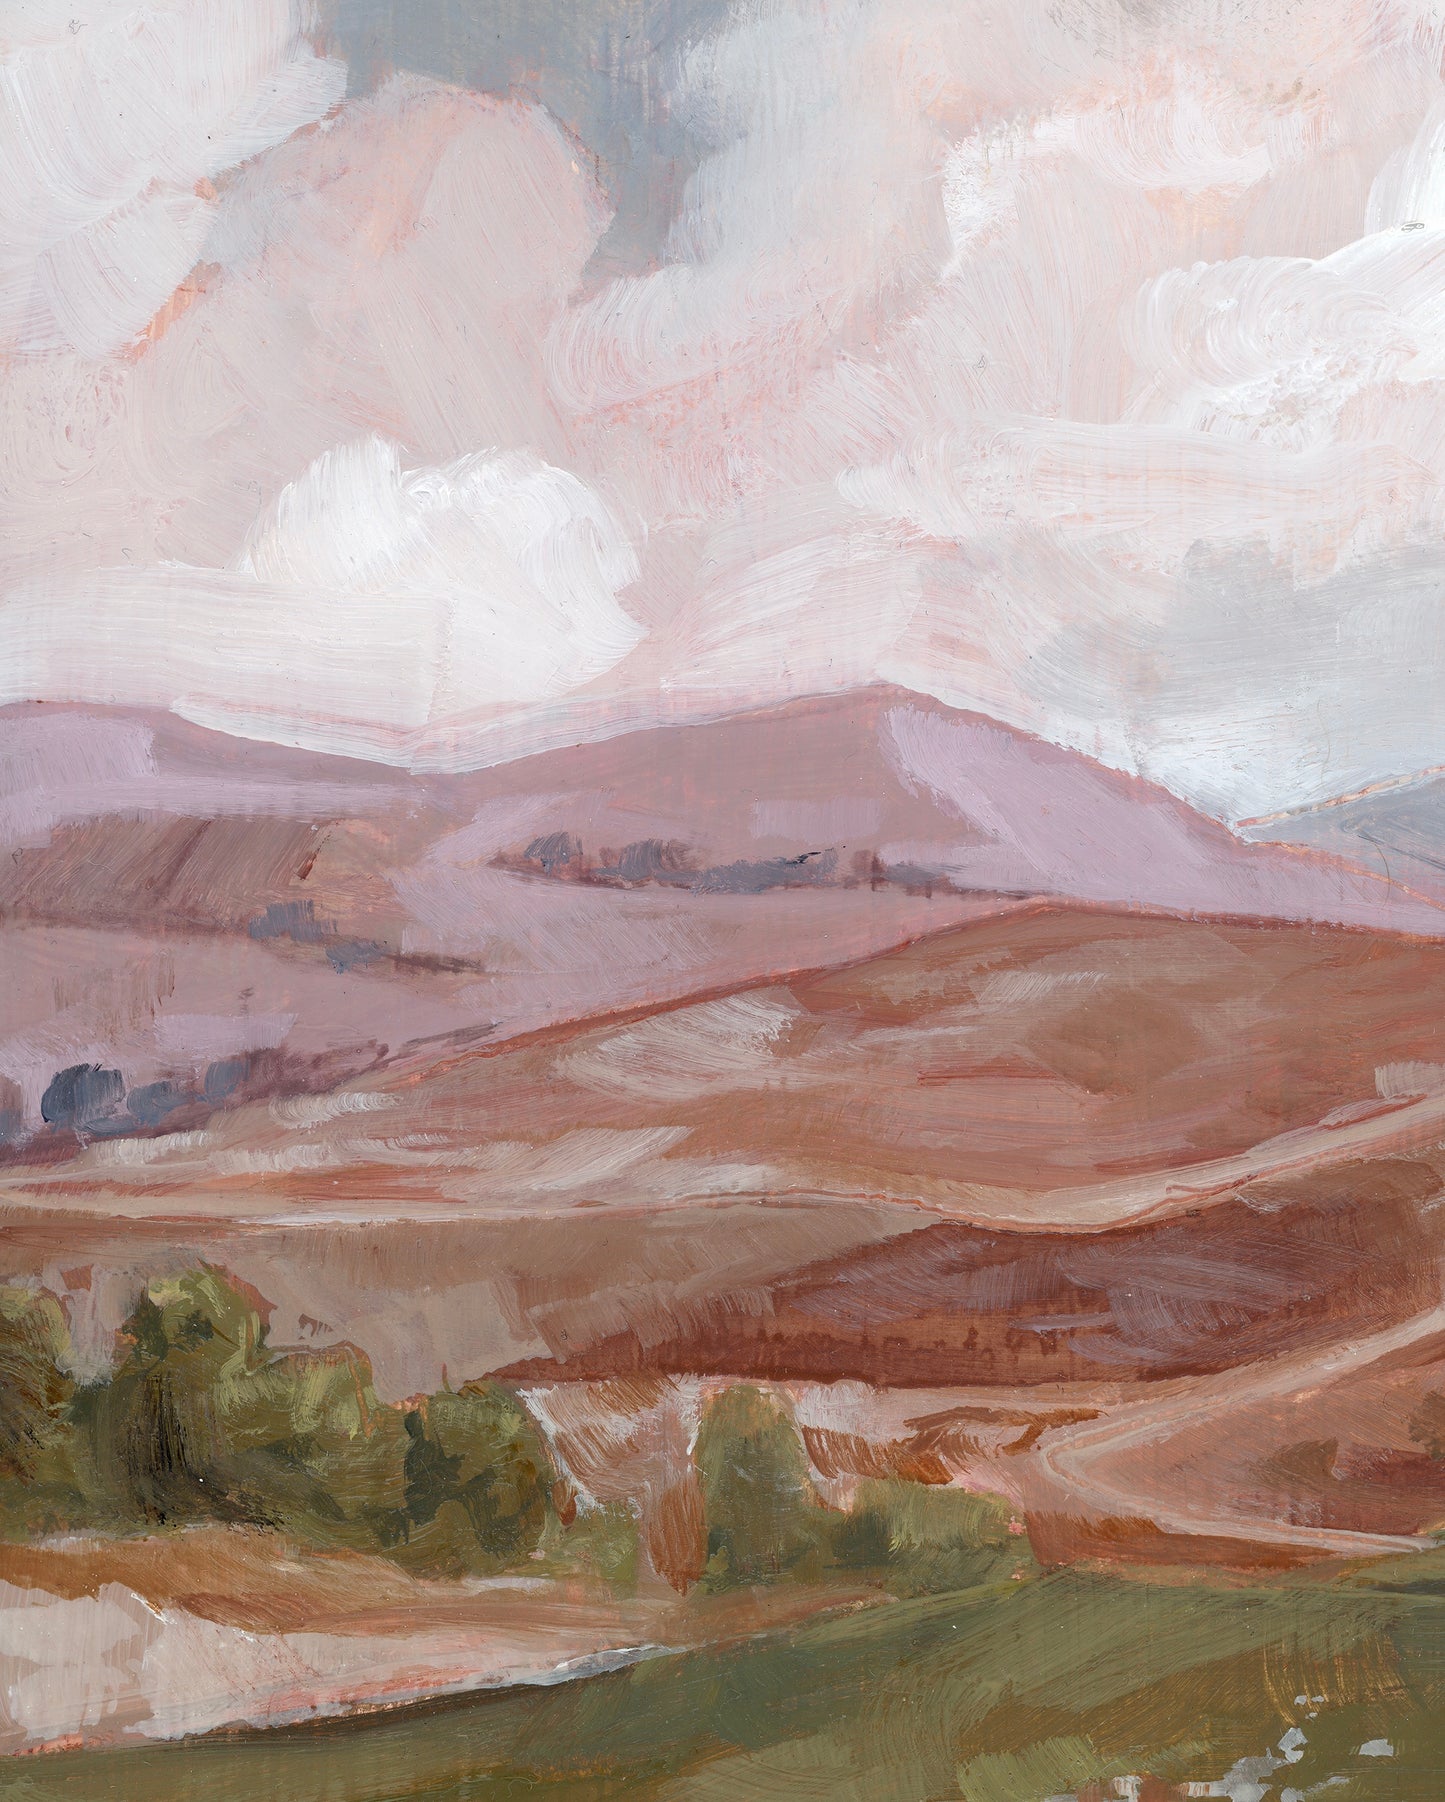 'Shepherd's Field' Print + Canvas